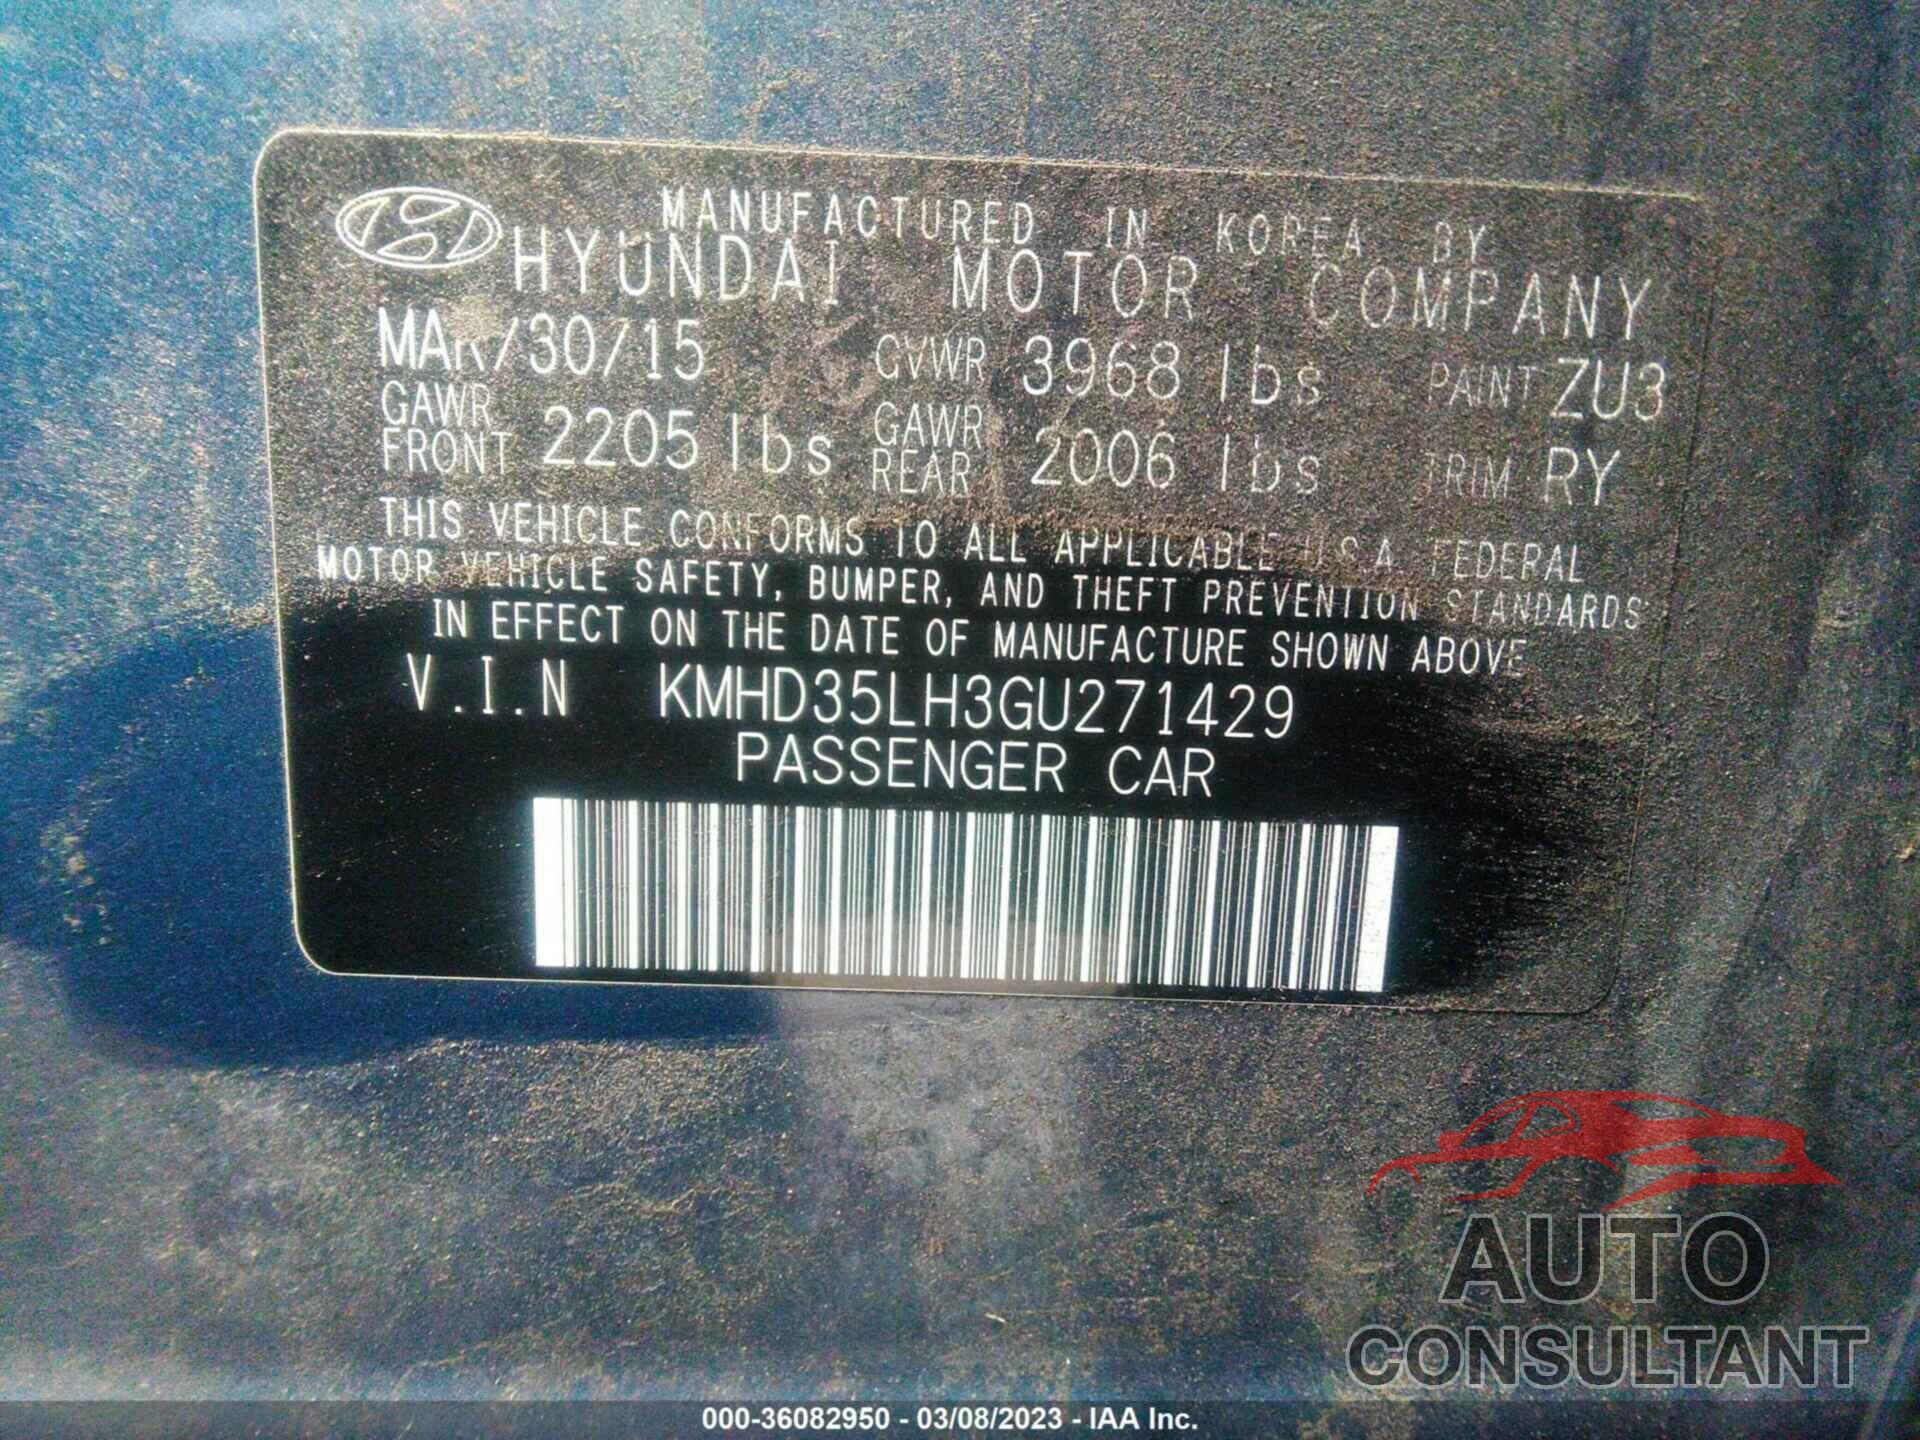 HYUNDAI ELANTRA GT 2016 - KMHD35LH3GU271429